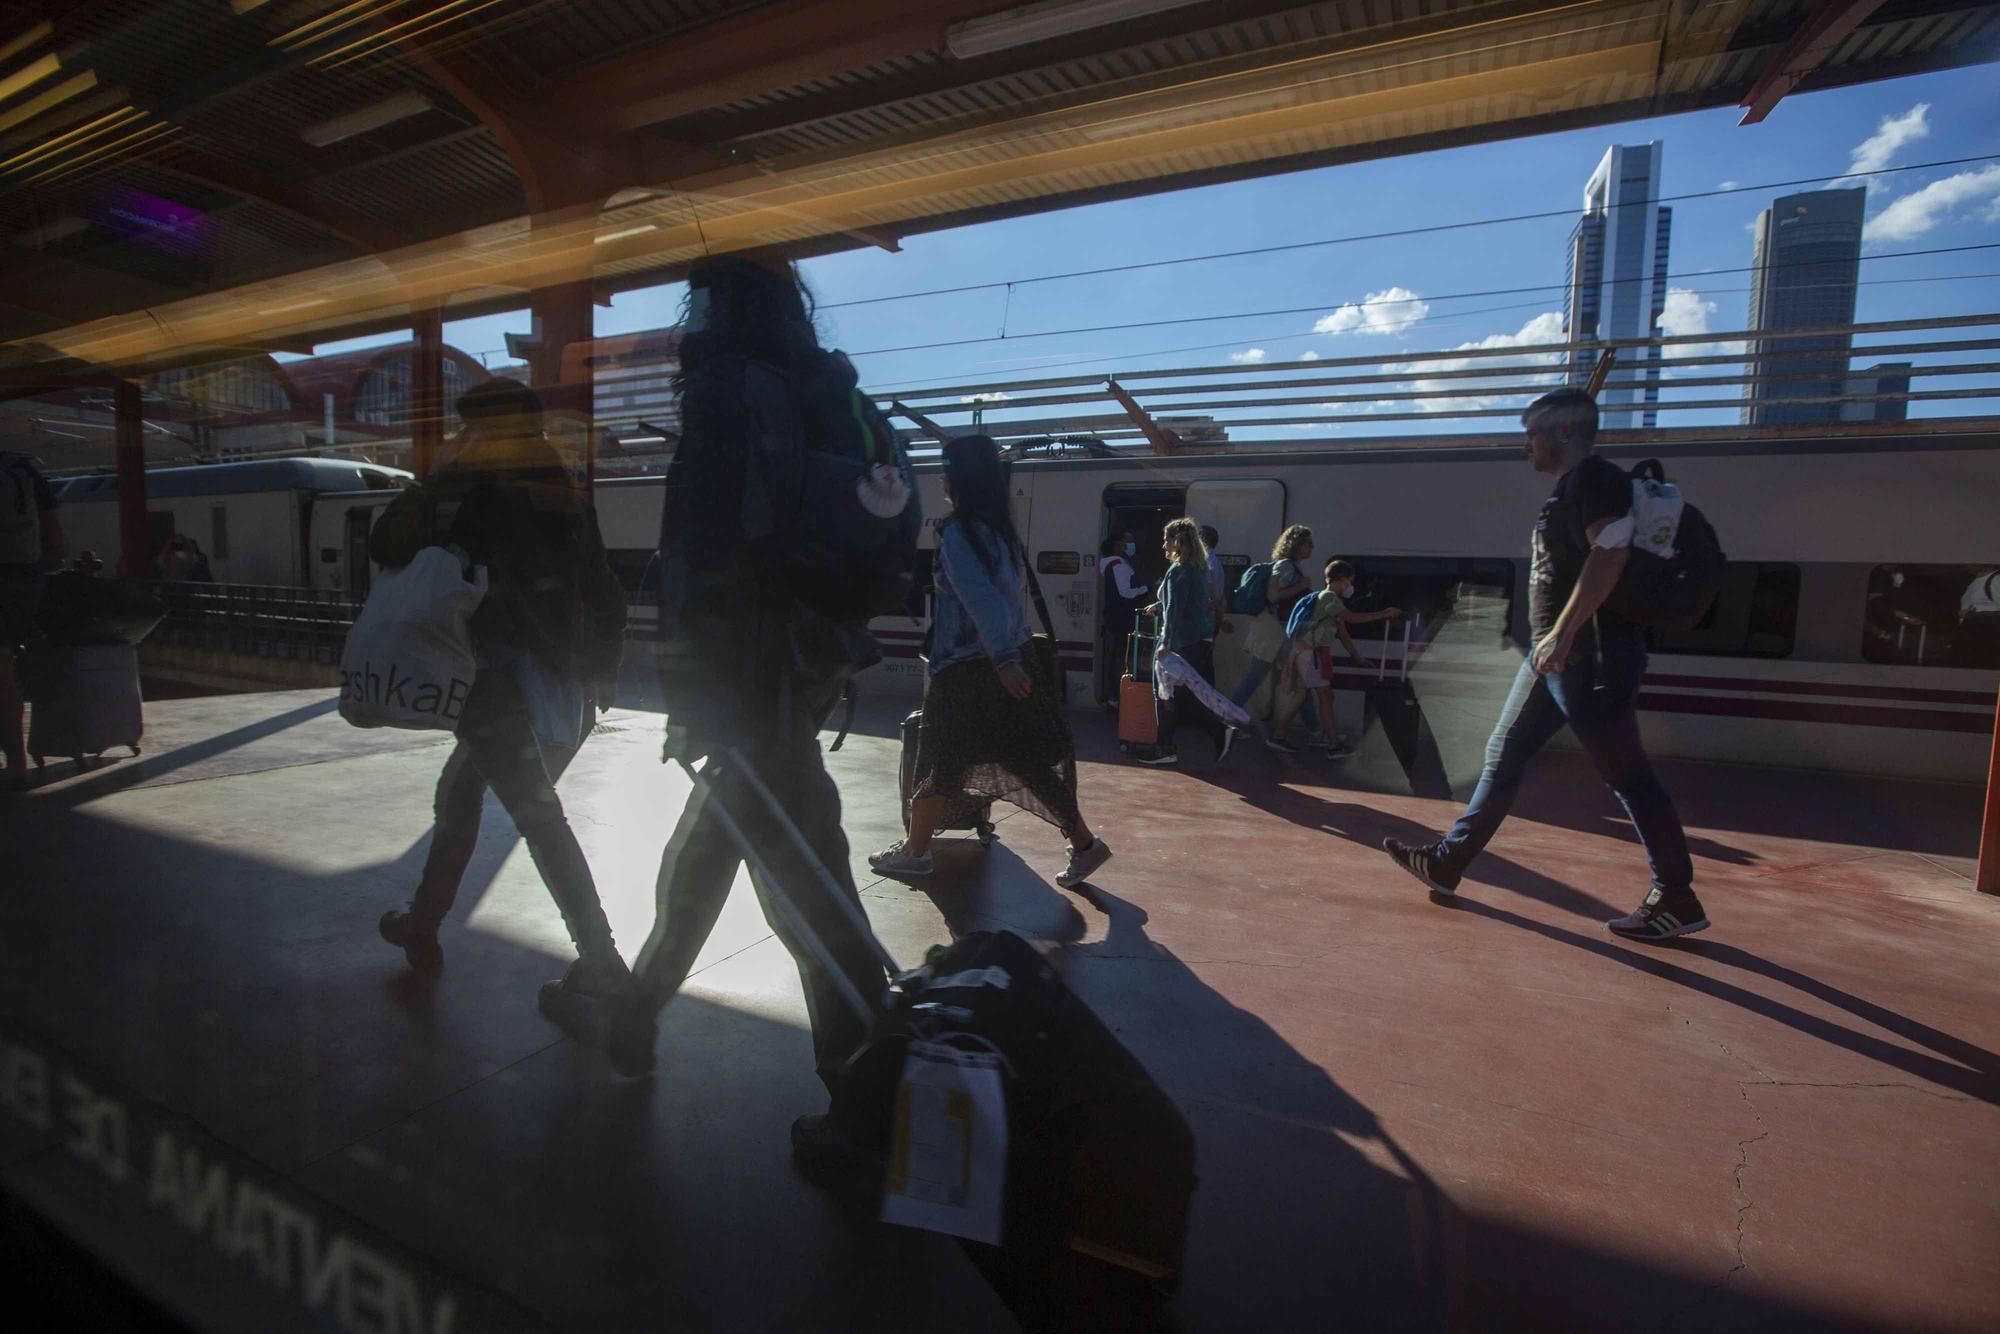 Así ven los pasajeros habituales el cambio de estación de Atocha a Chamartín